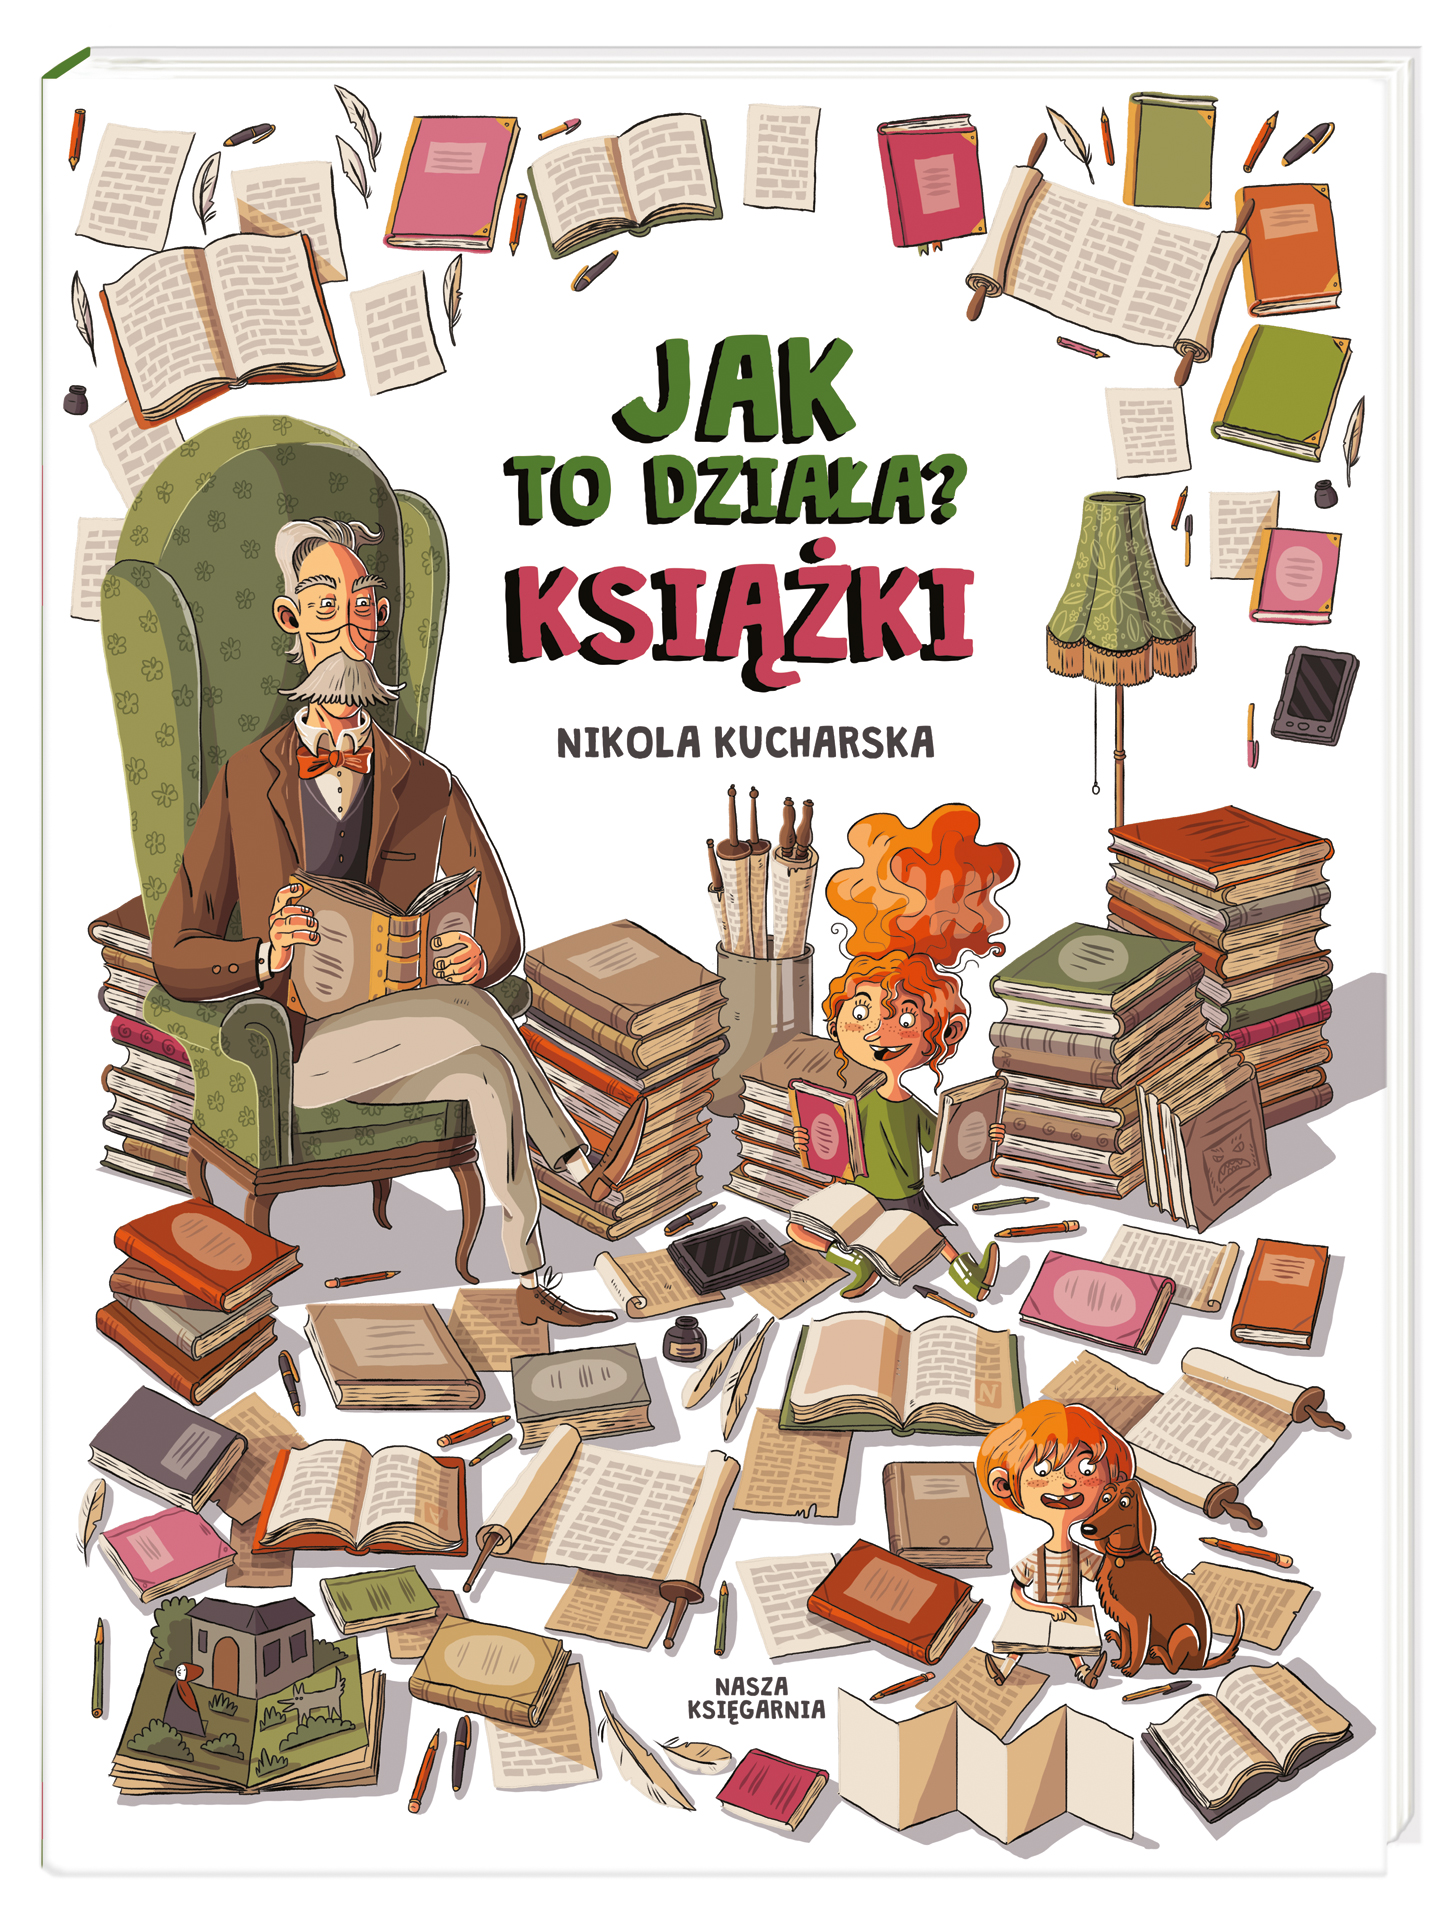 Okładka książki o tytule Książki autorstwa Nikoli Kucharskiej